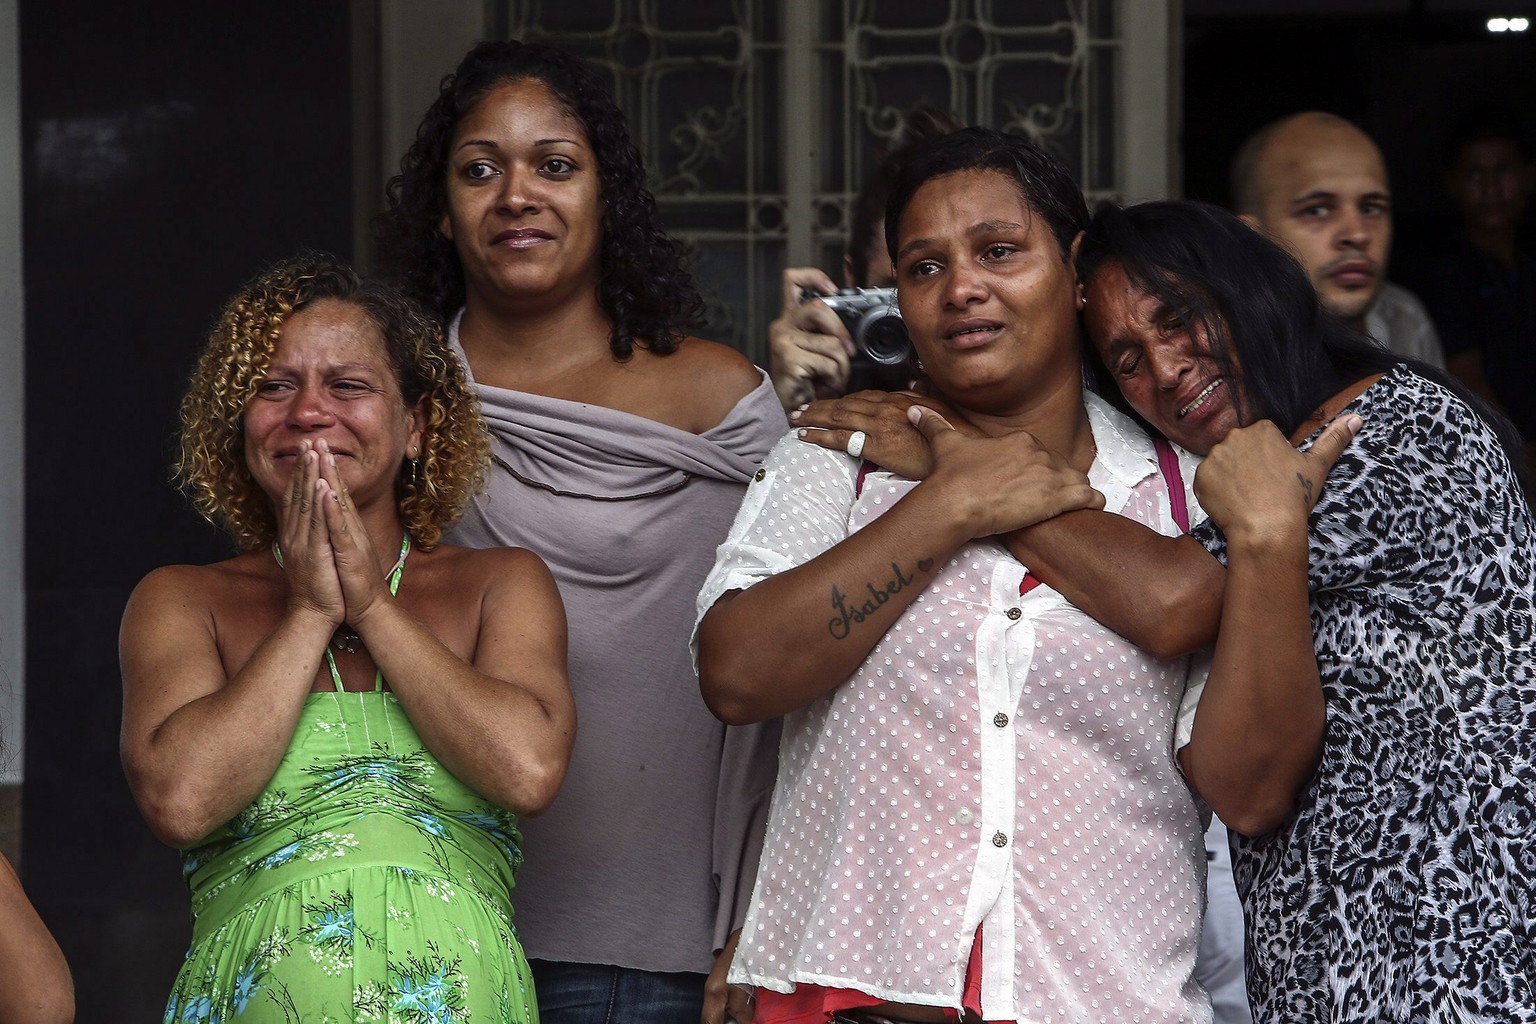 Trauernde Frauen bei der Beisetzung des getöteten Tänzers in Rio de Janeiro.